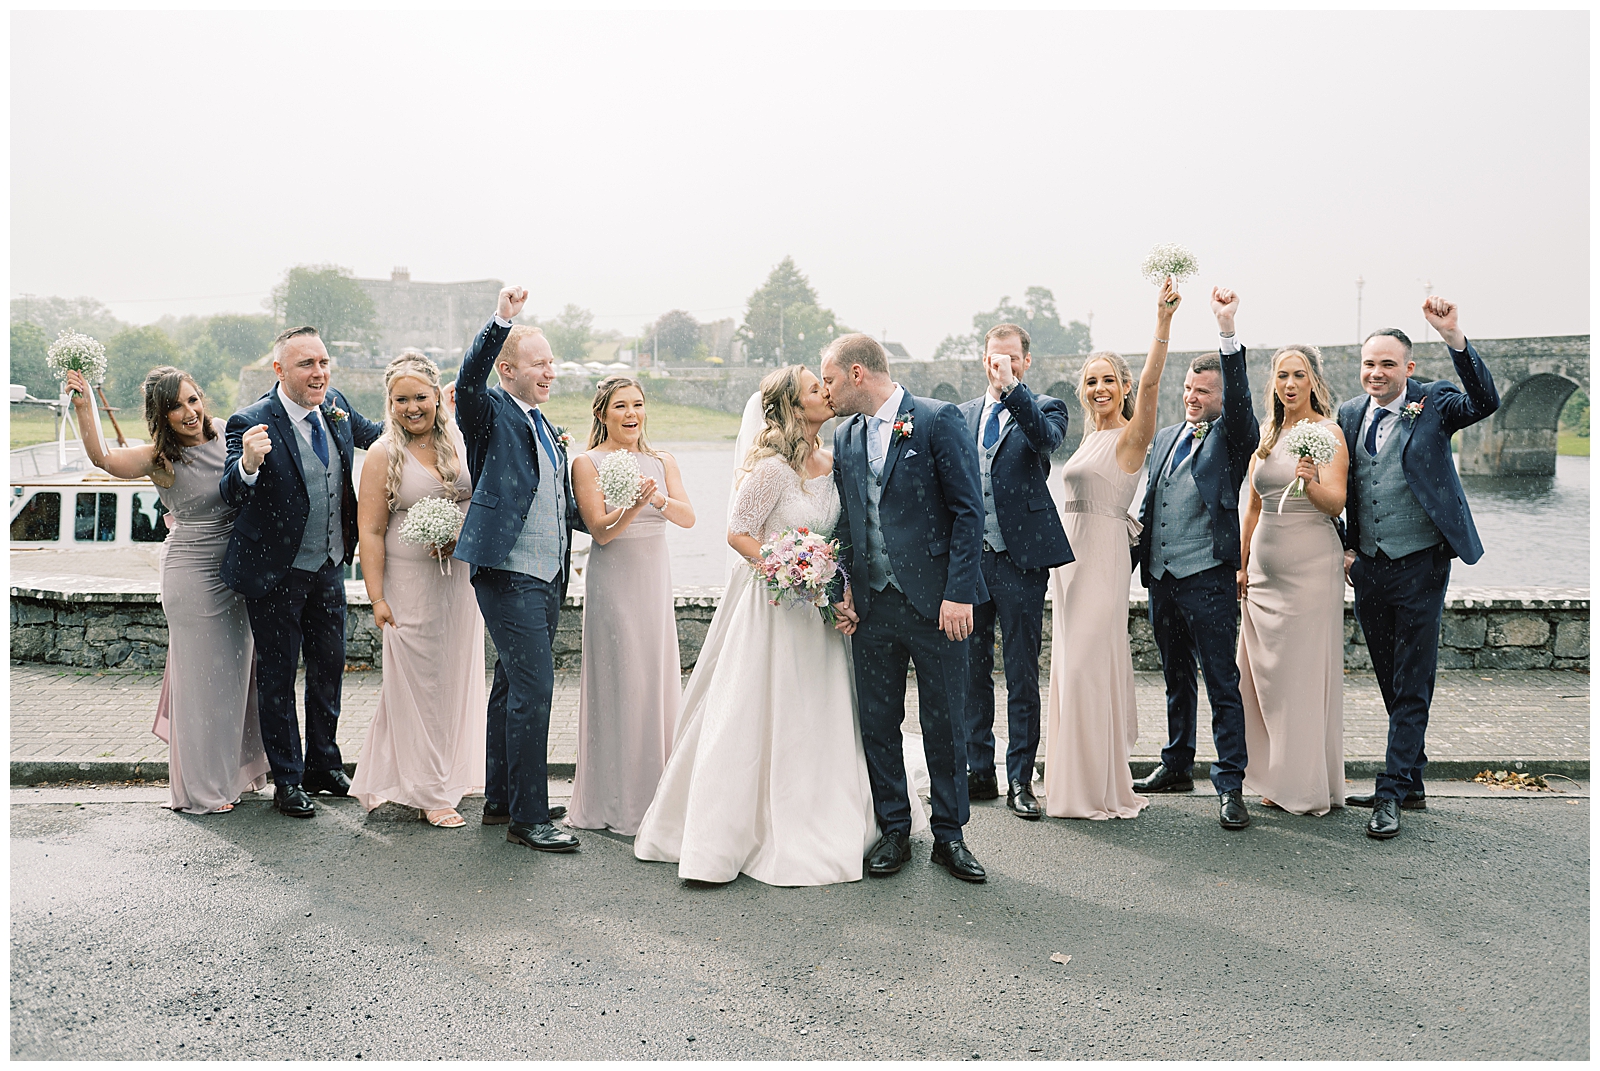 Joyous rainy wedding day at Shannonbridge; Ireland wedding photography.